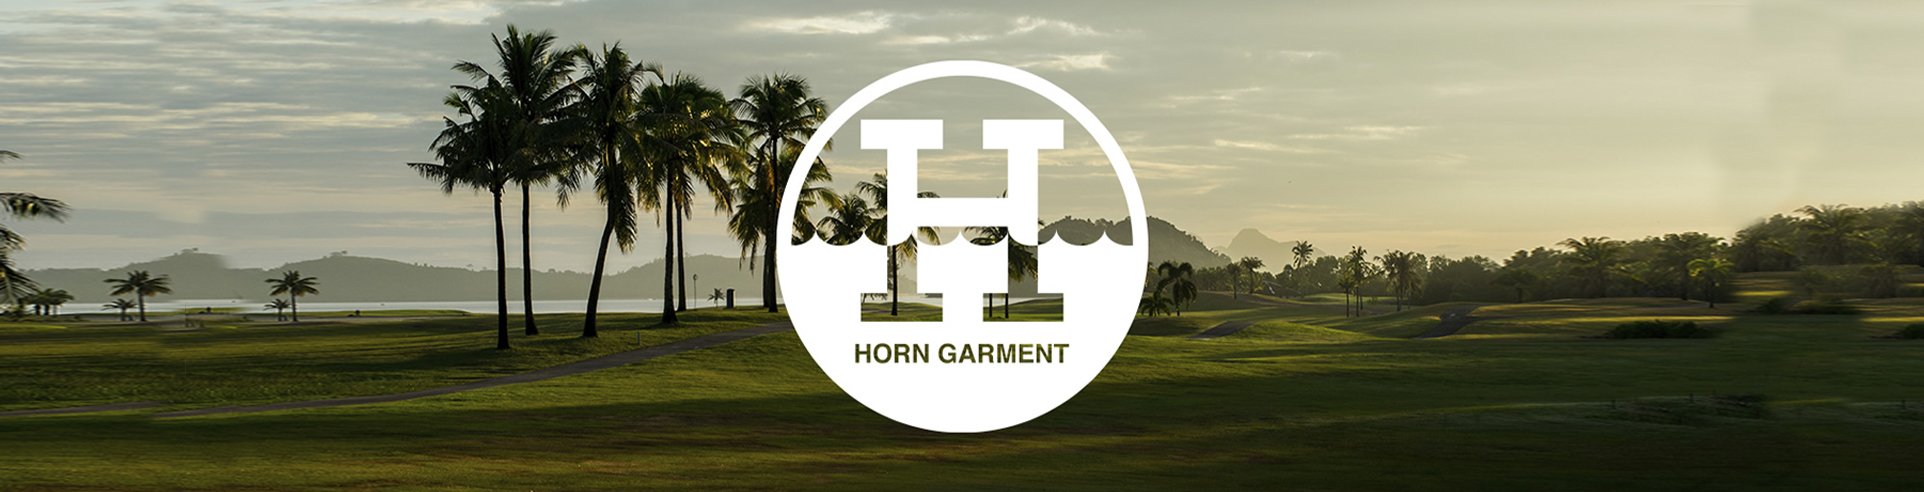 HORN GARMENT